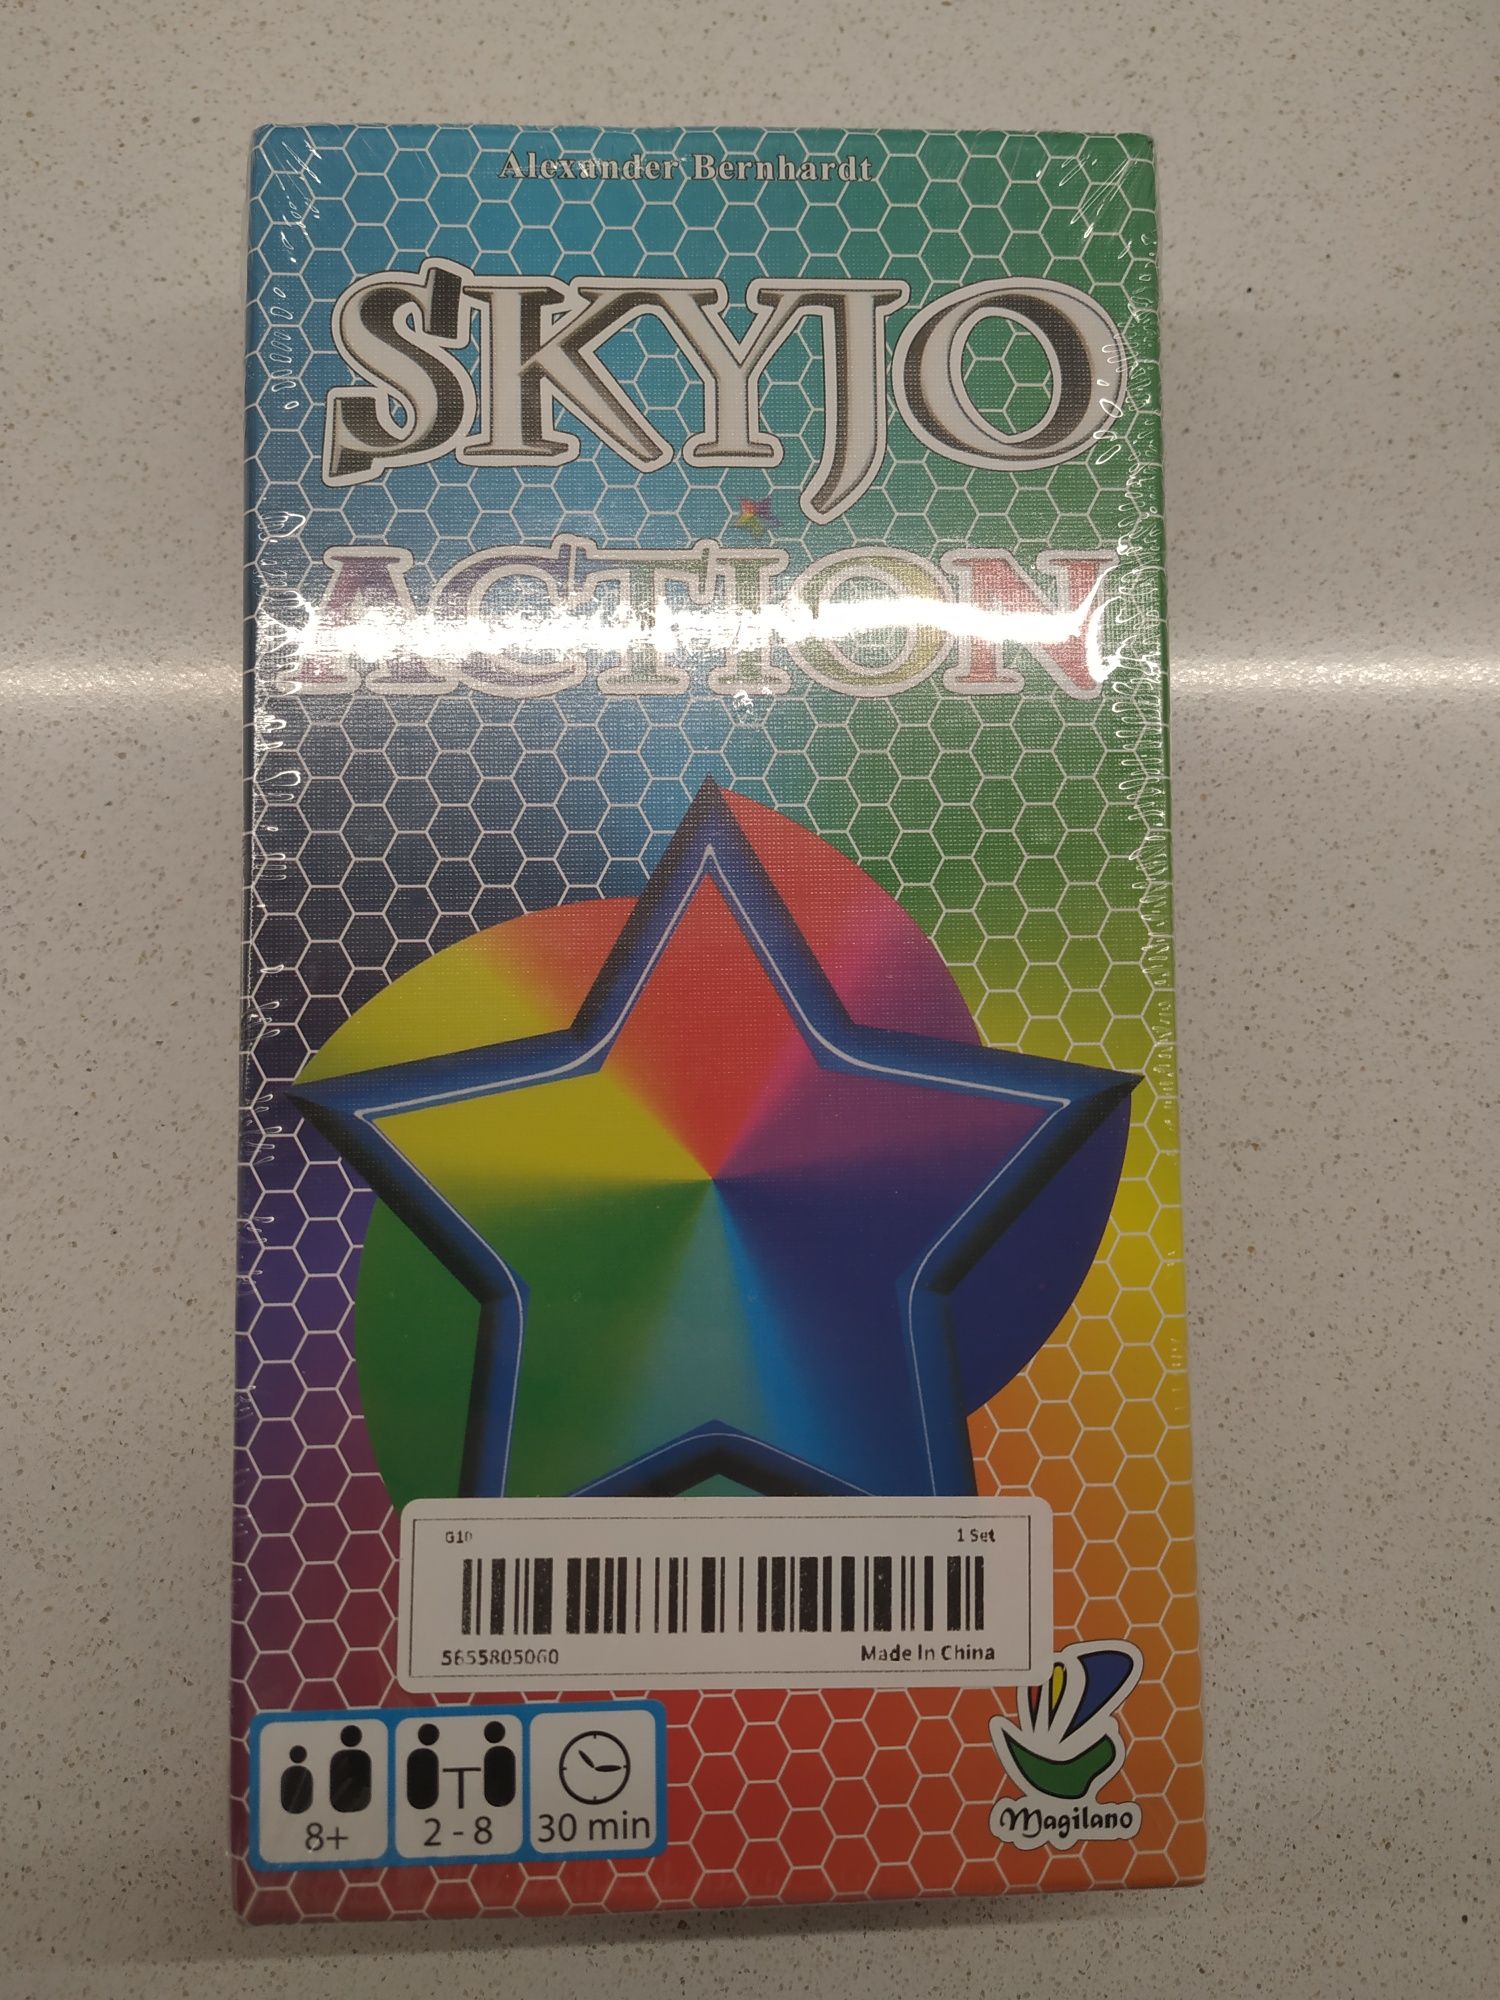 Skyjo action jogo cartas